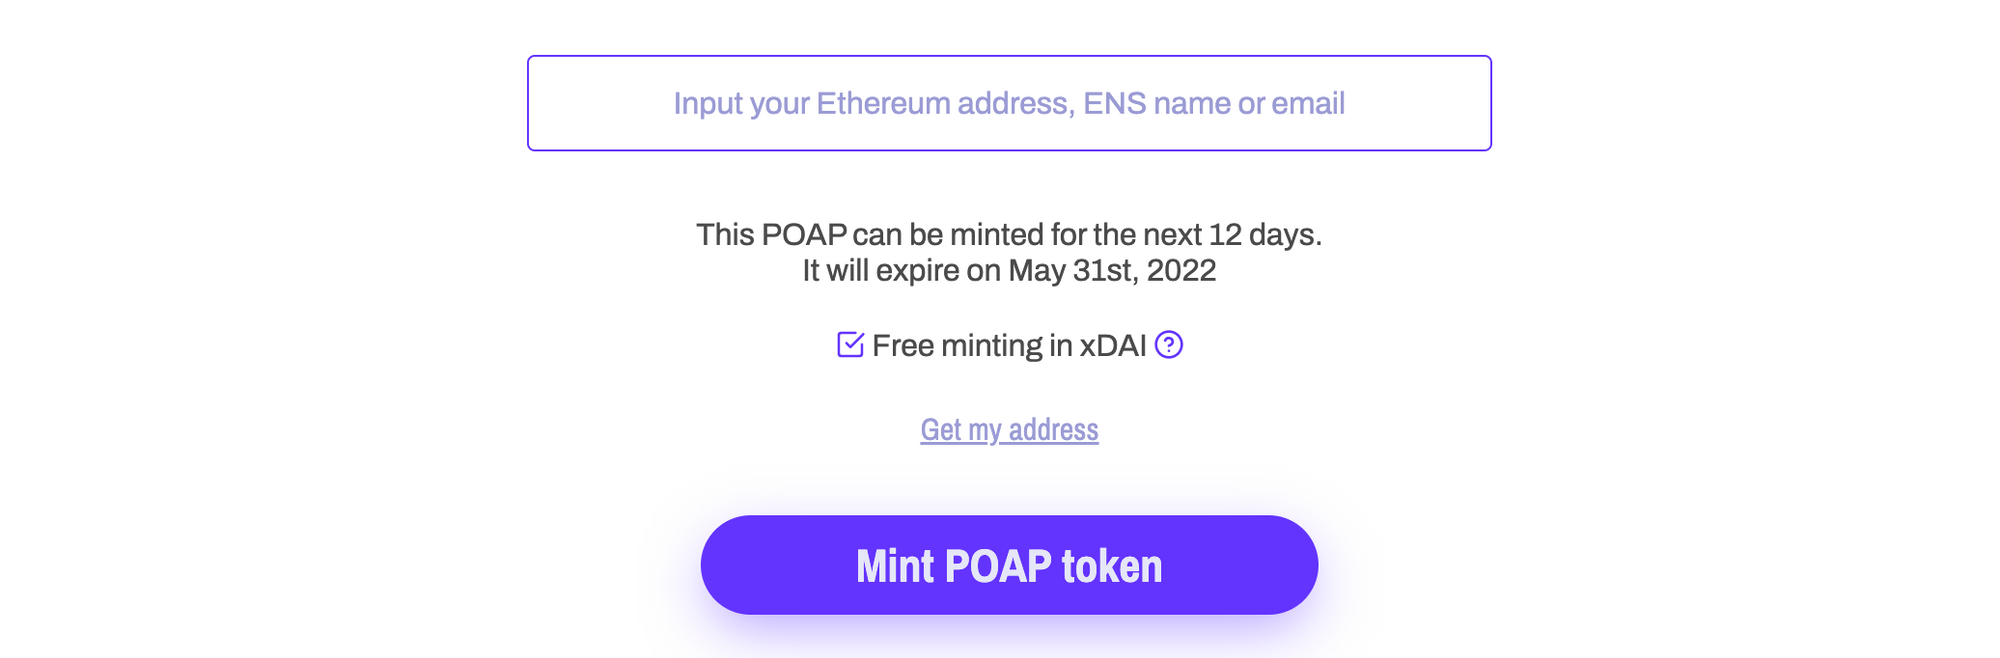 Mint POAP token using unique mint links